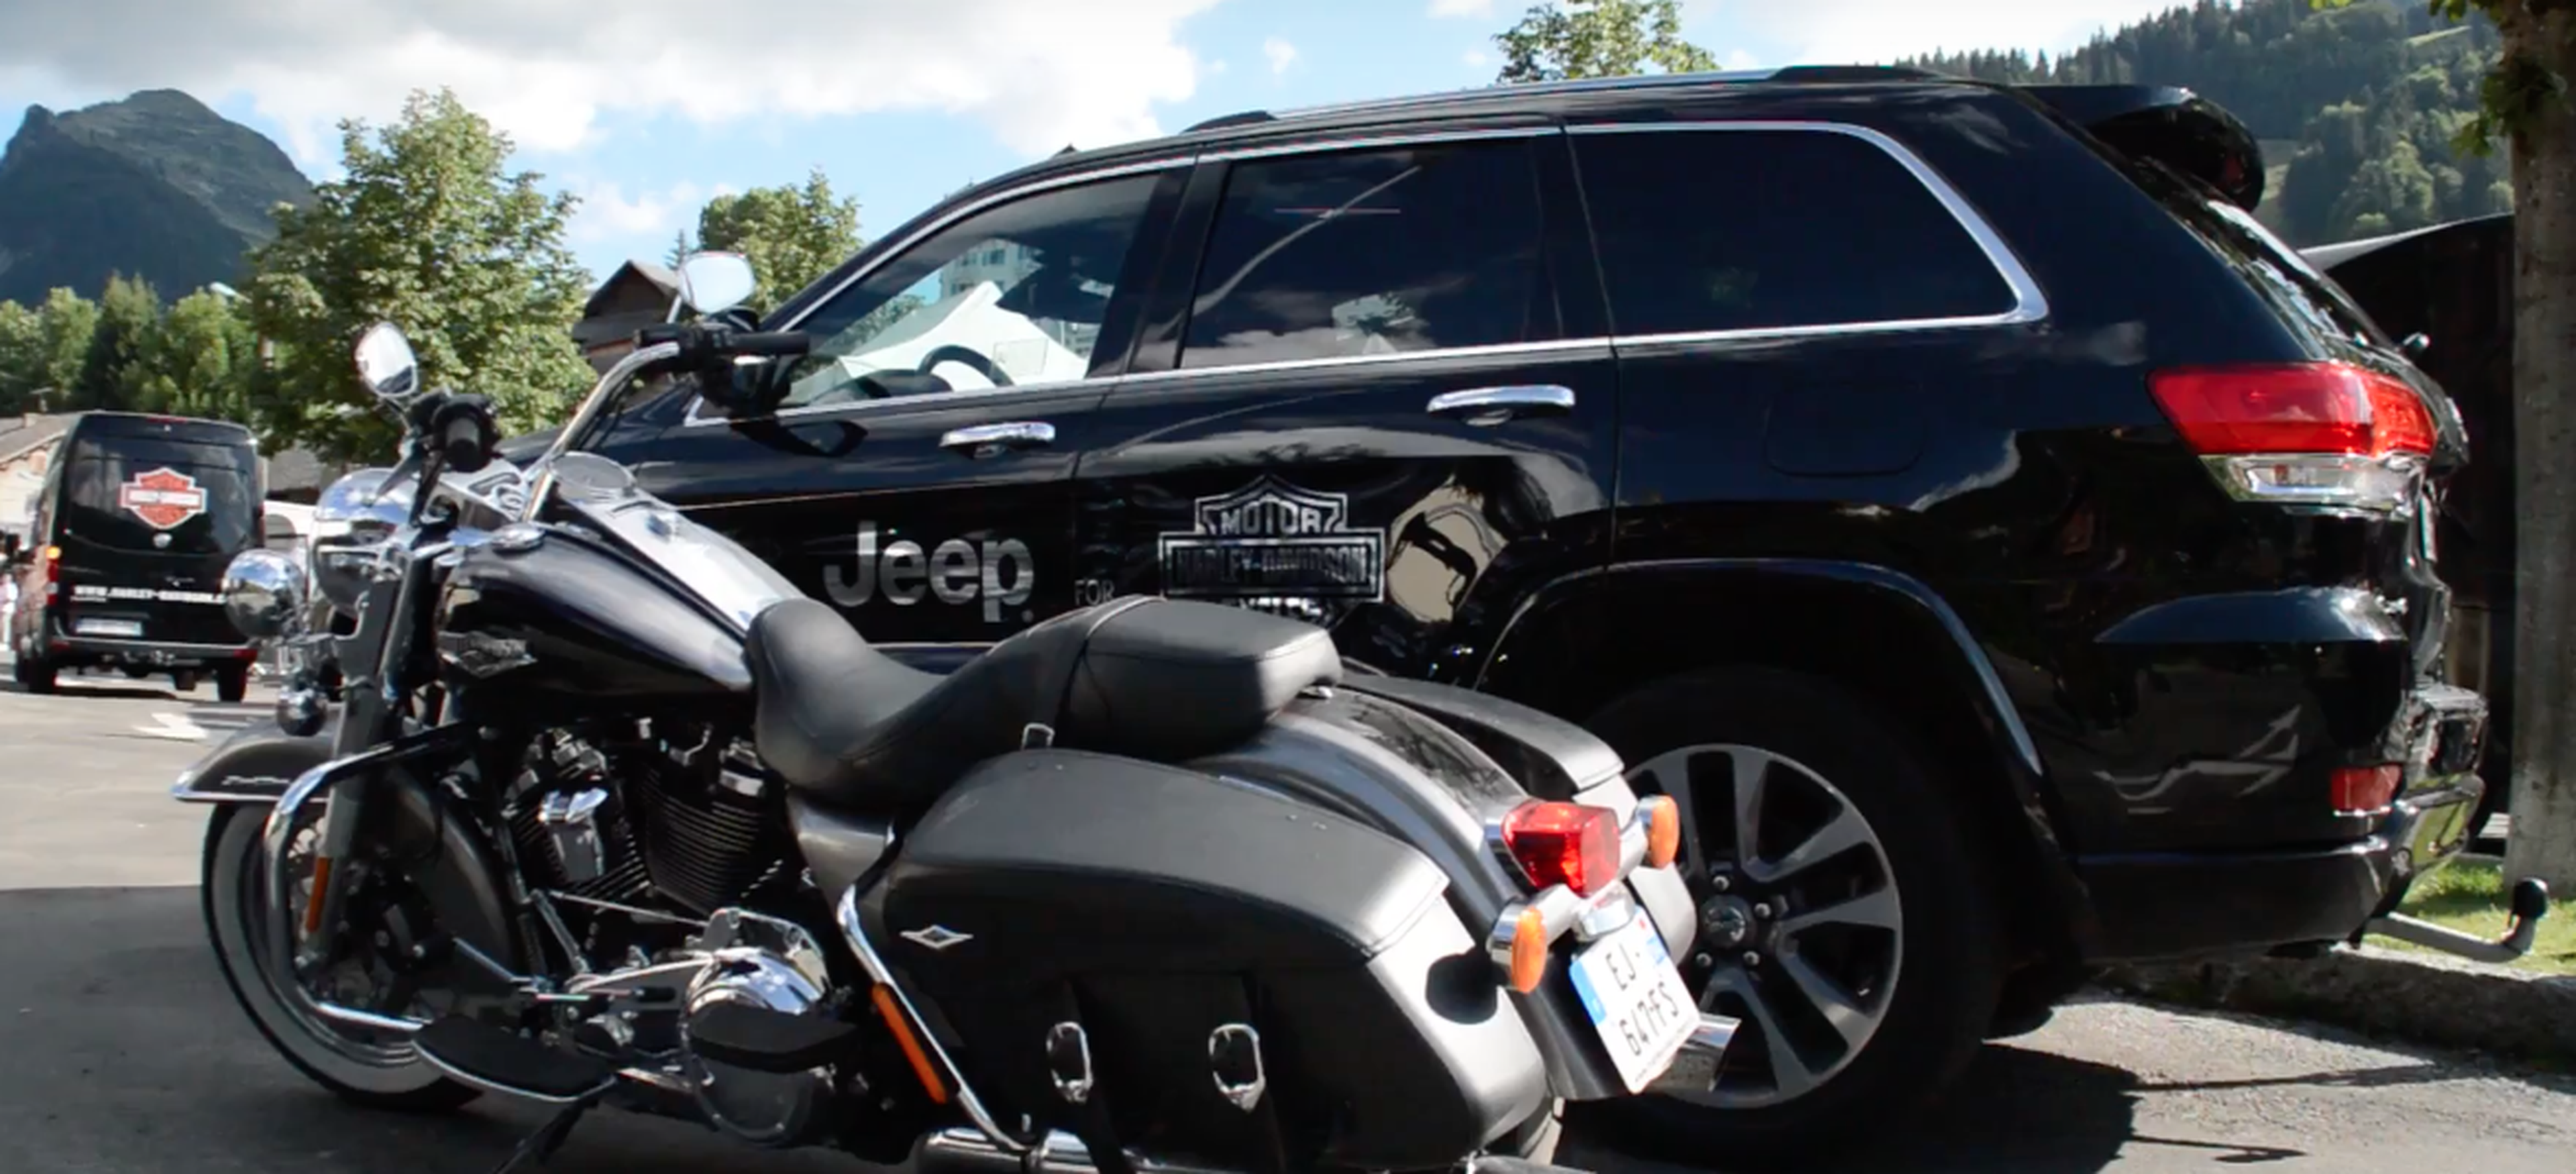 VÍDEO: ¿Qué pueden hacer juntos Jeep y Harley Davidson en los Alpes? ¡Pues eso! Liarla… [TG]